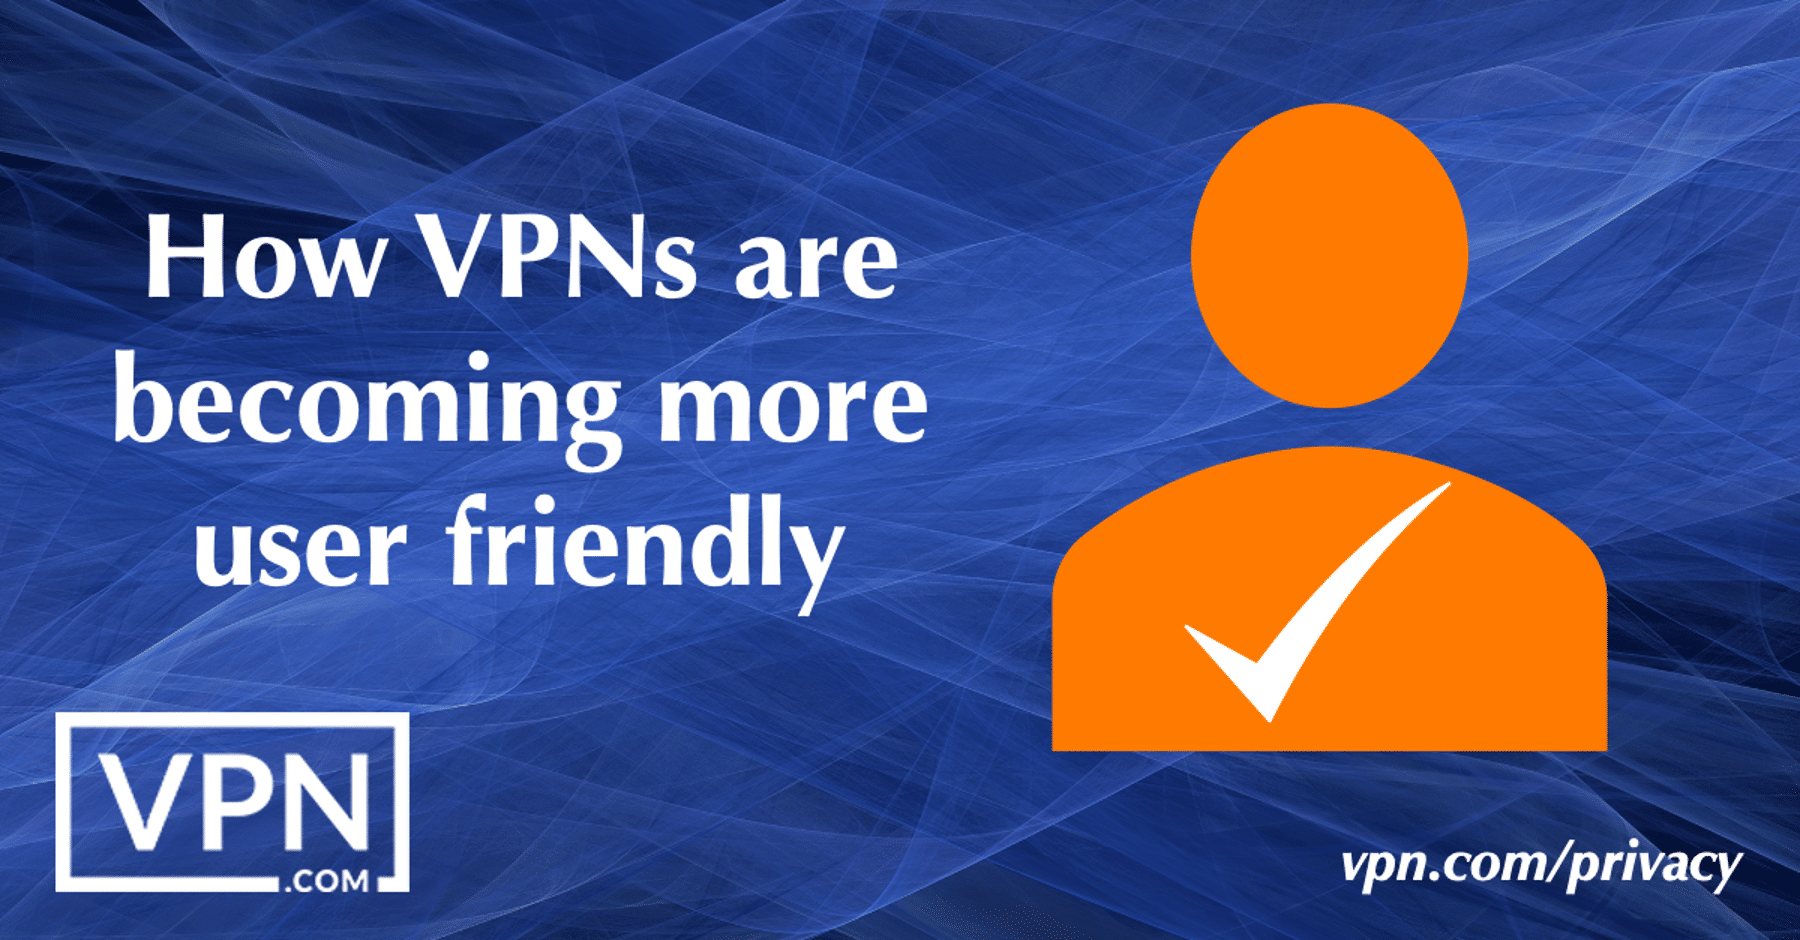 Come le VPN stanno diventando sempre più facili da usare.